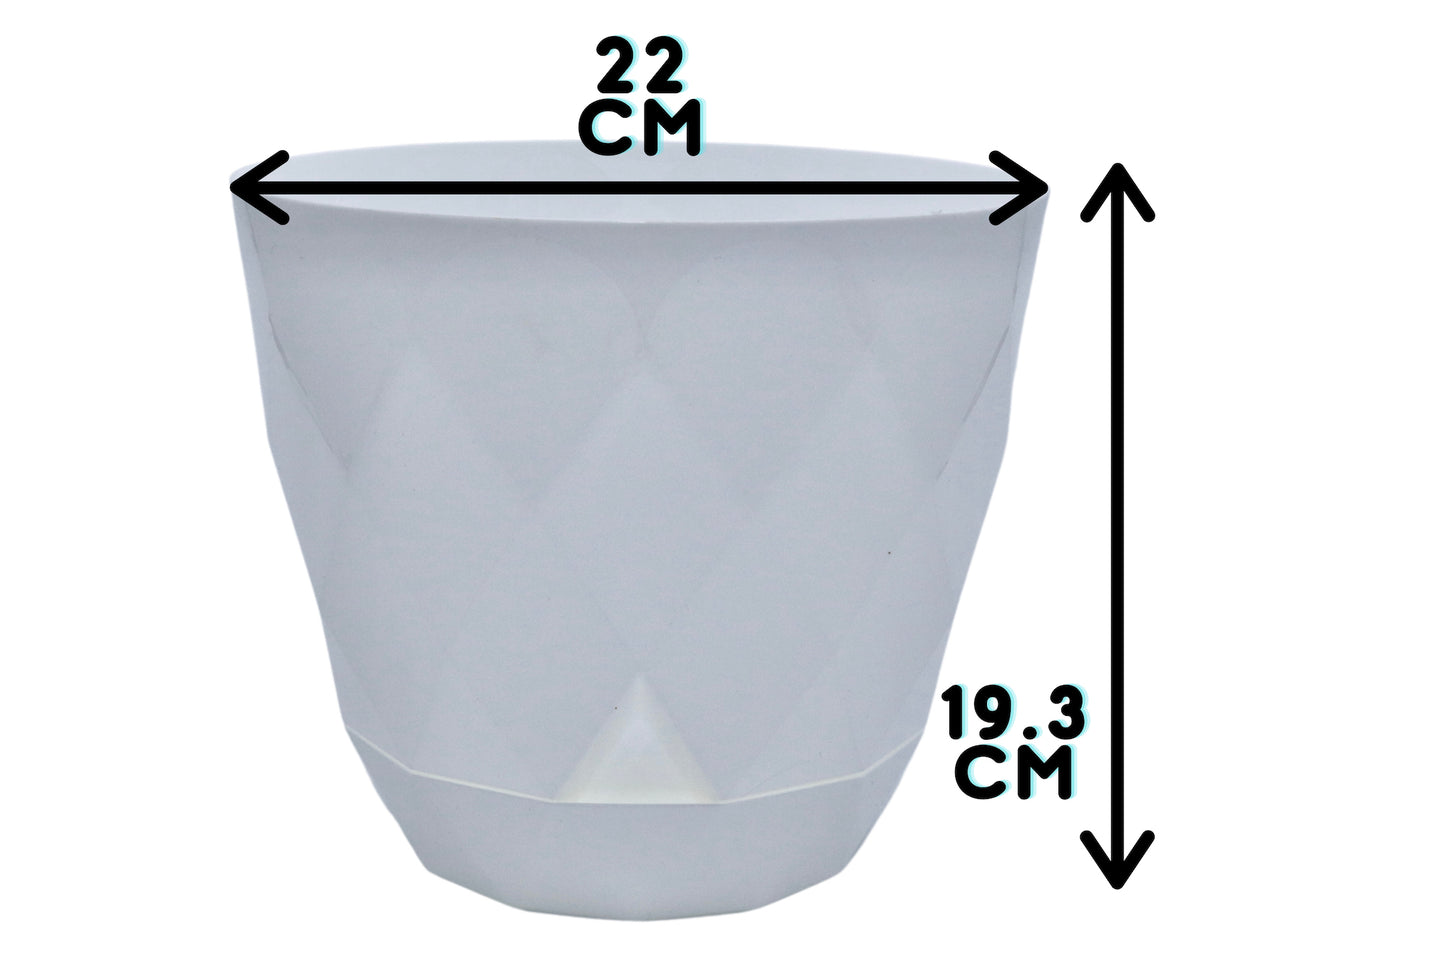 22cm white plant pot measurements